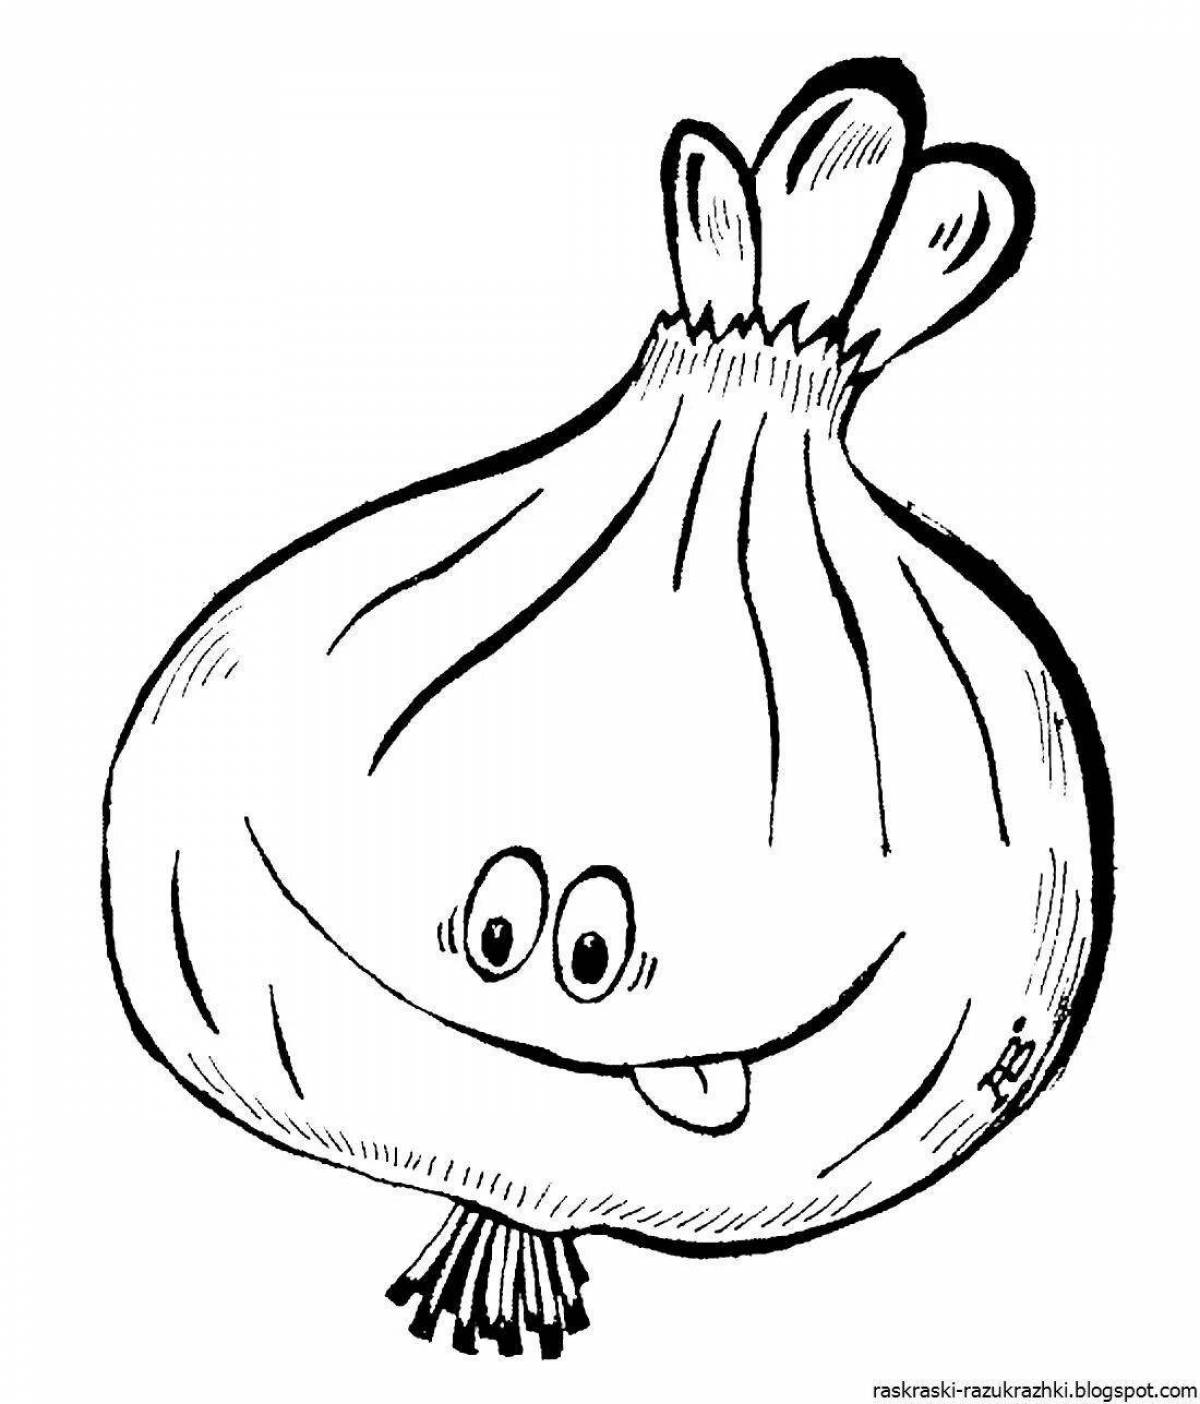 Children's garlic #1